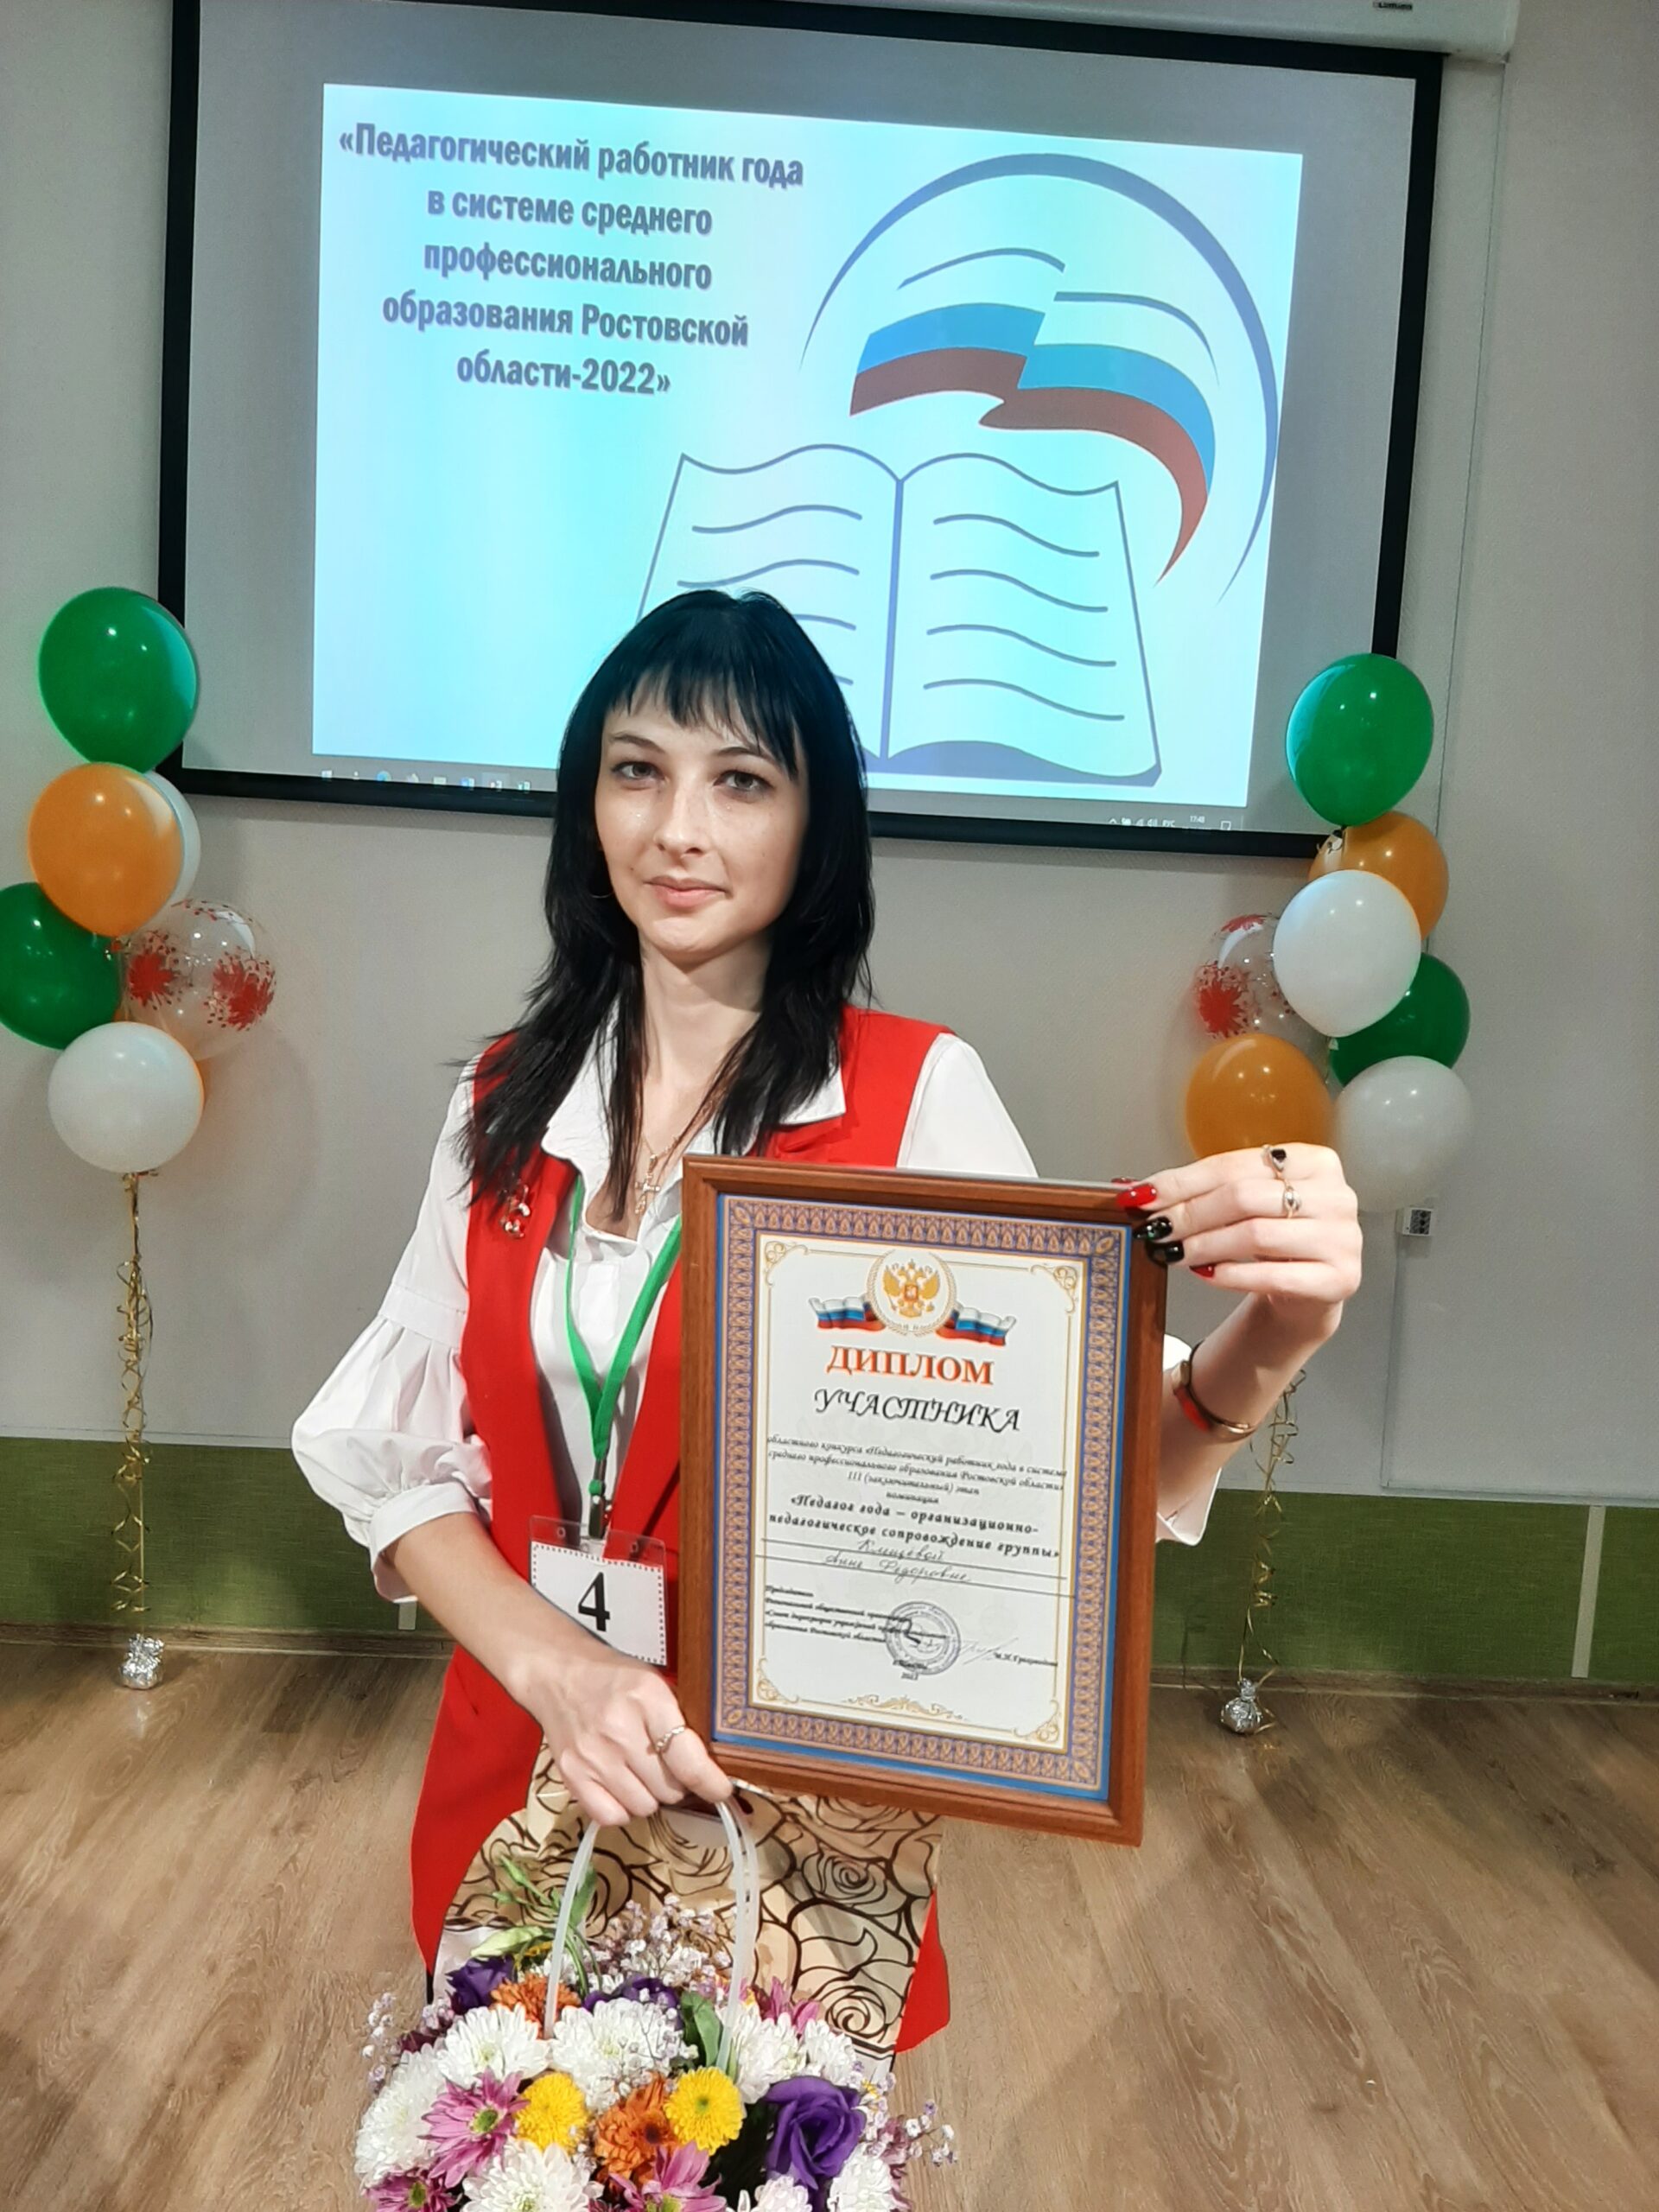 Участие в Областном конкурсе «Педагогический работник года в системе среднего профессионального образования Ростовской области»